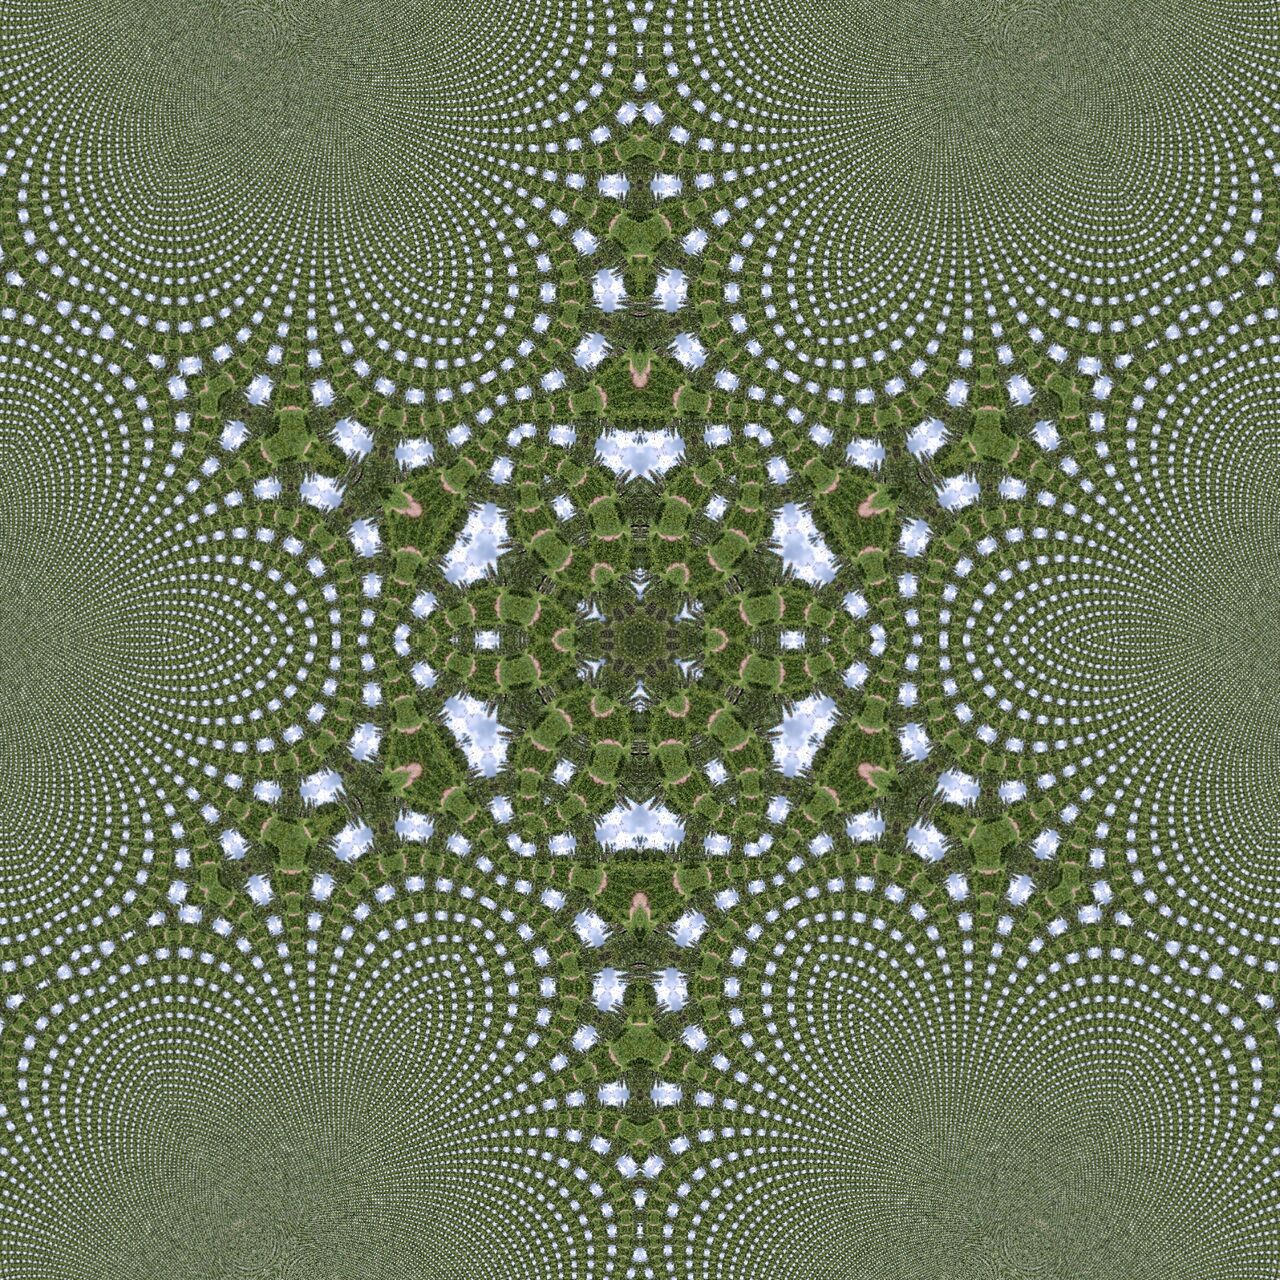 Grau-grünliches Bild eines sechszackigen Sterns mit geschwungenen Ecken. Fraktale Struktur.